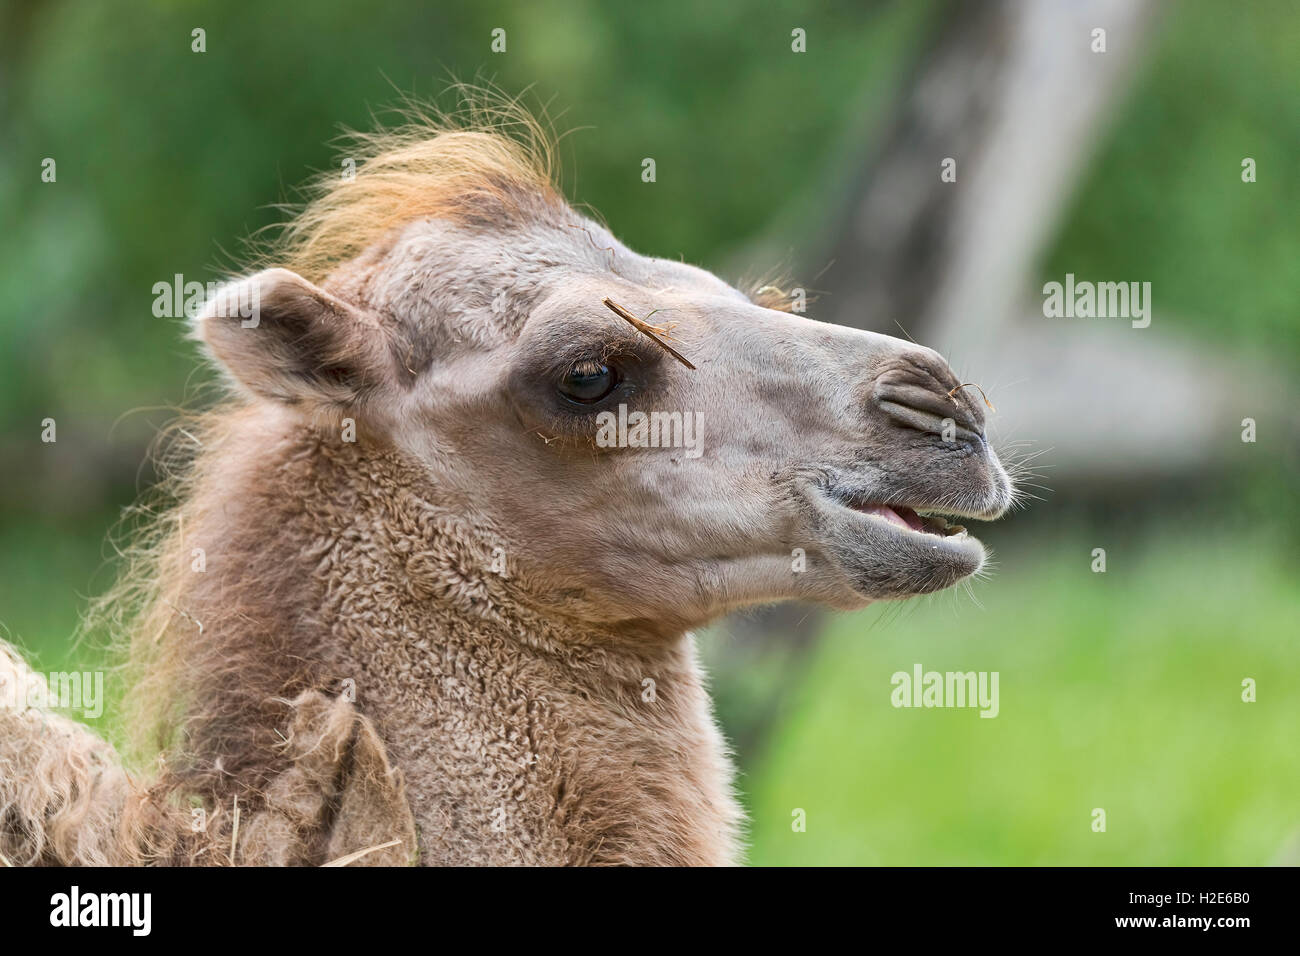 Wild Bactrian camel (Camelus ferus), capretti, ritratto, captive Foto Stock